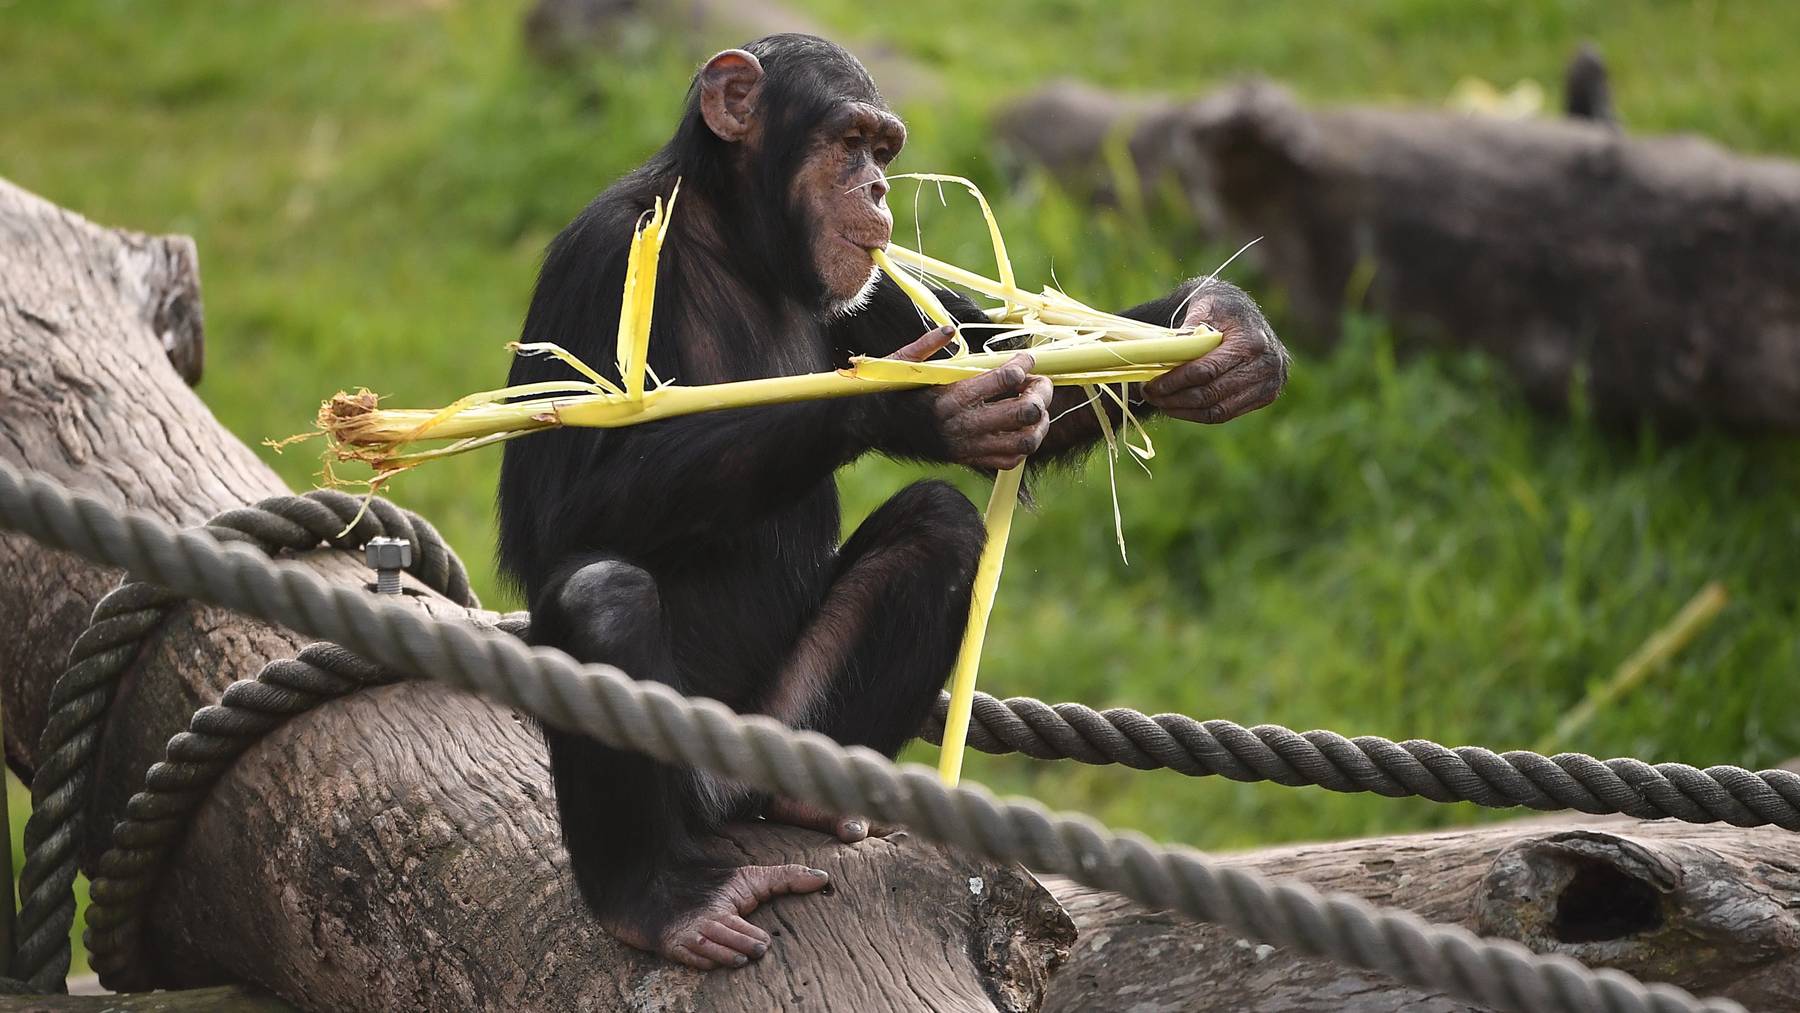 Schimpansen erlernen komplexe Fingerfertigkeiten, weil sie ein grösseres Gehirn als andere Affenarten haben.